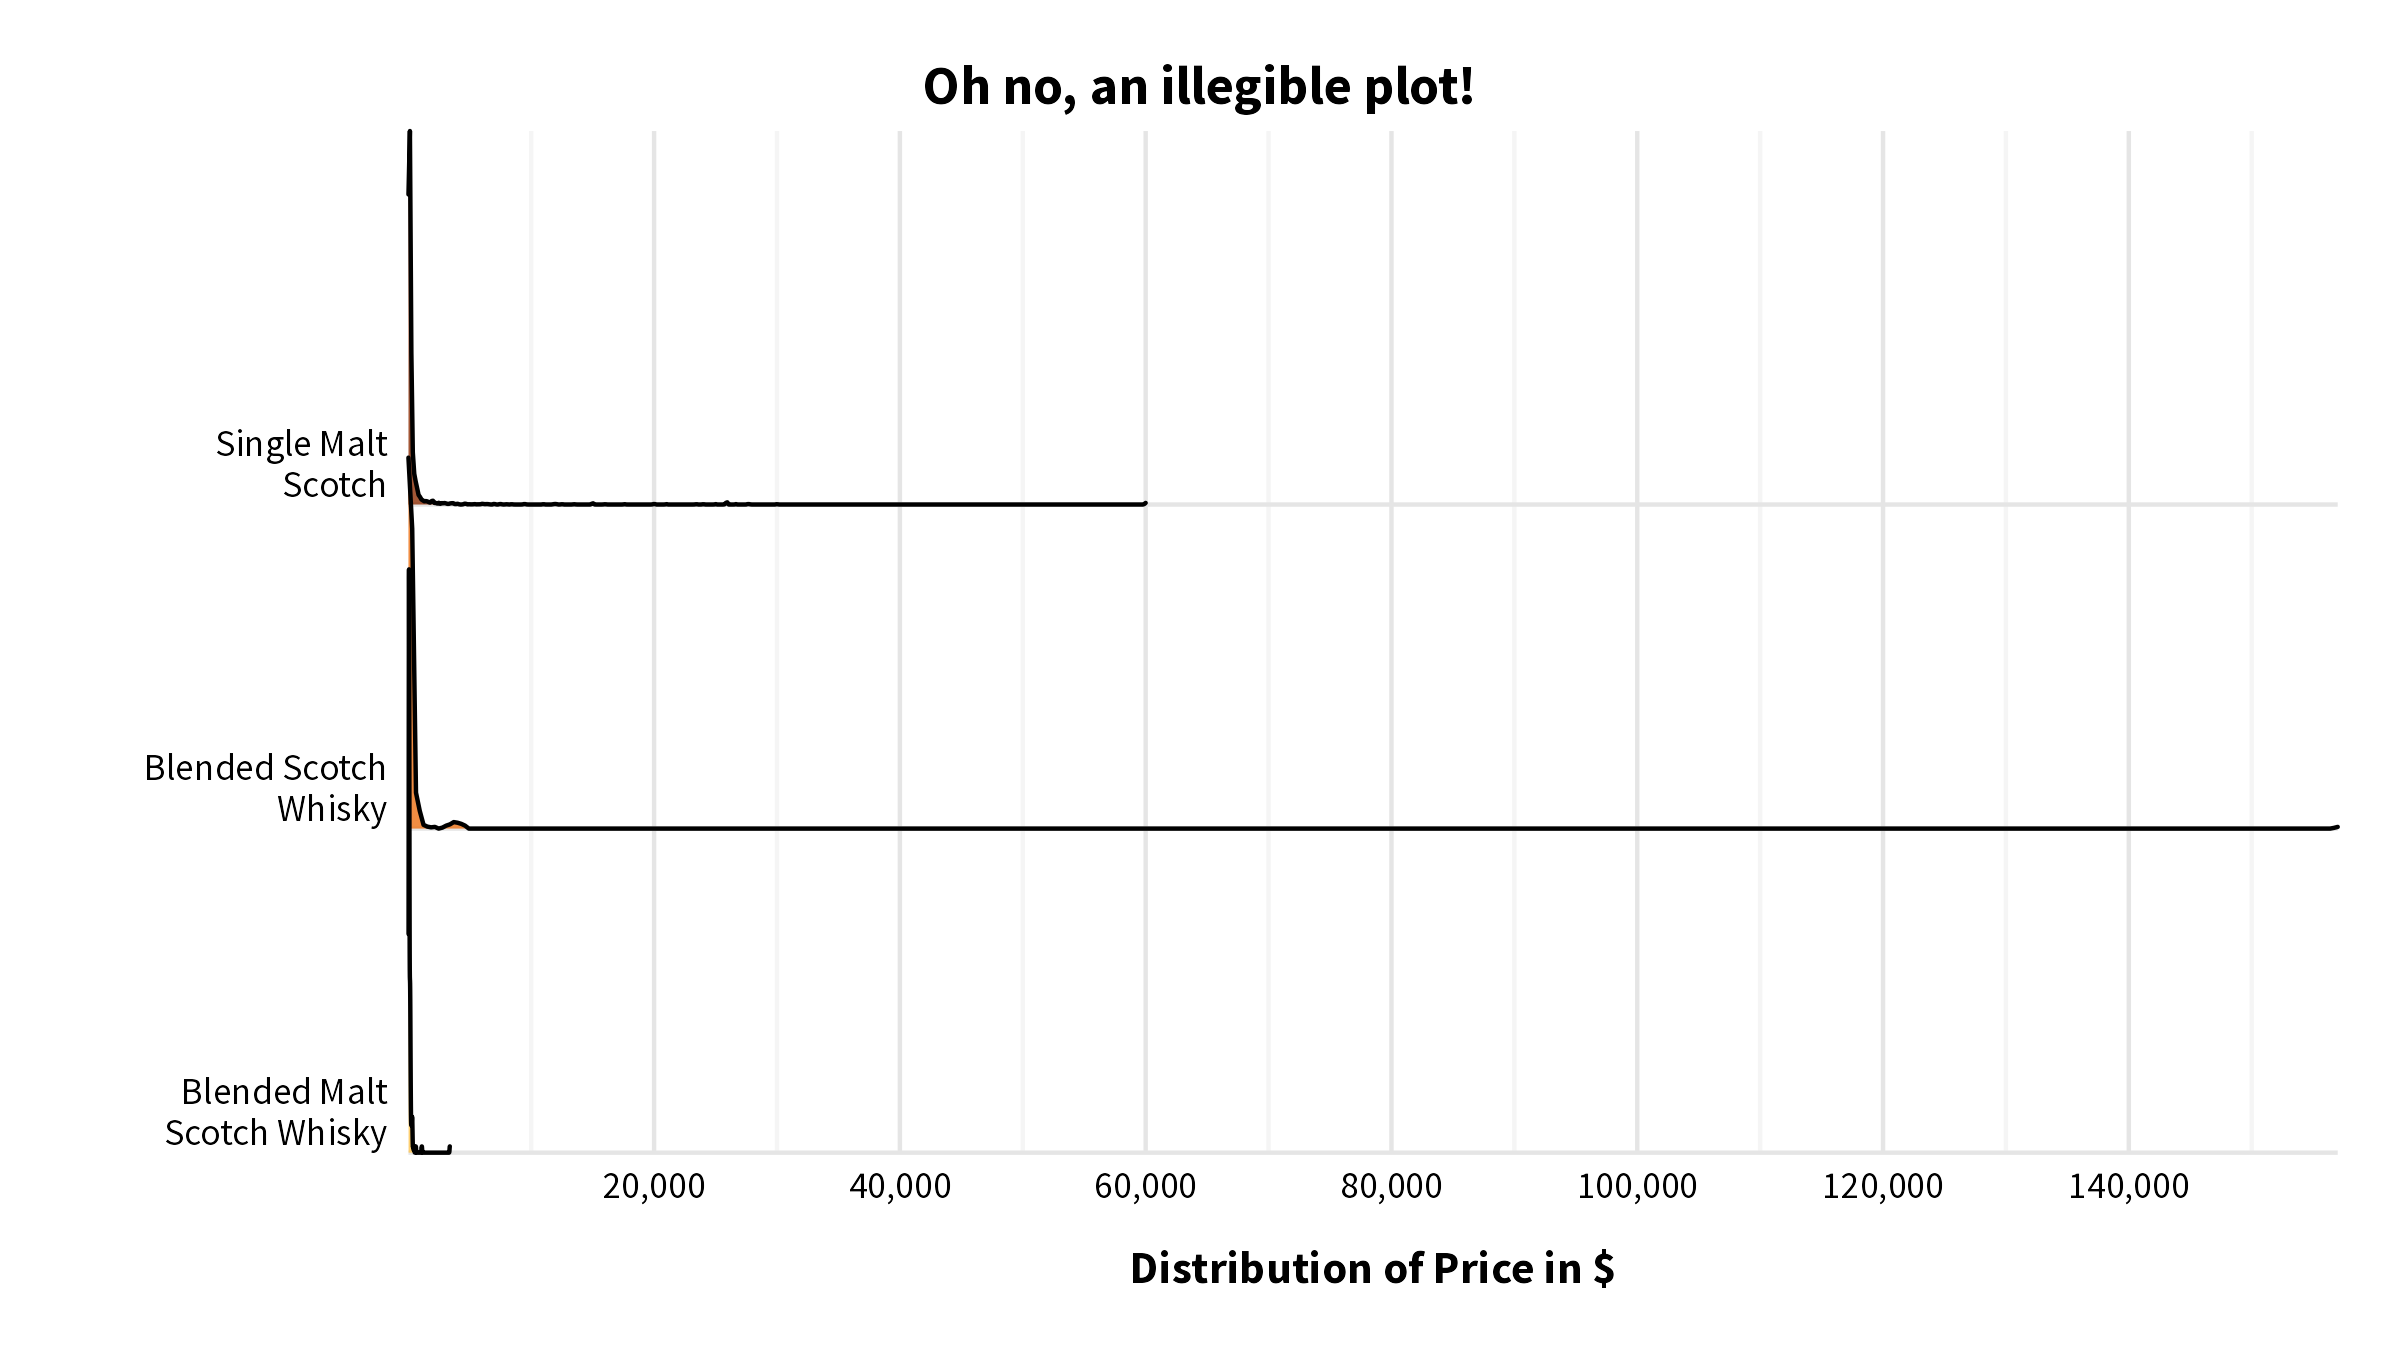 Ridgeline plot by scotch type (illegible).